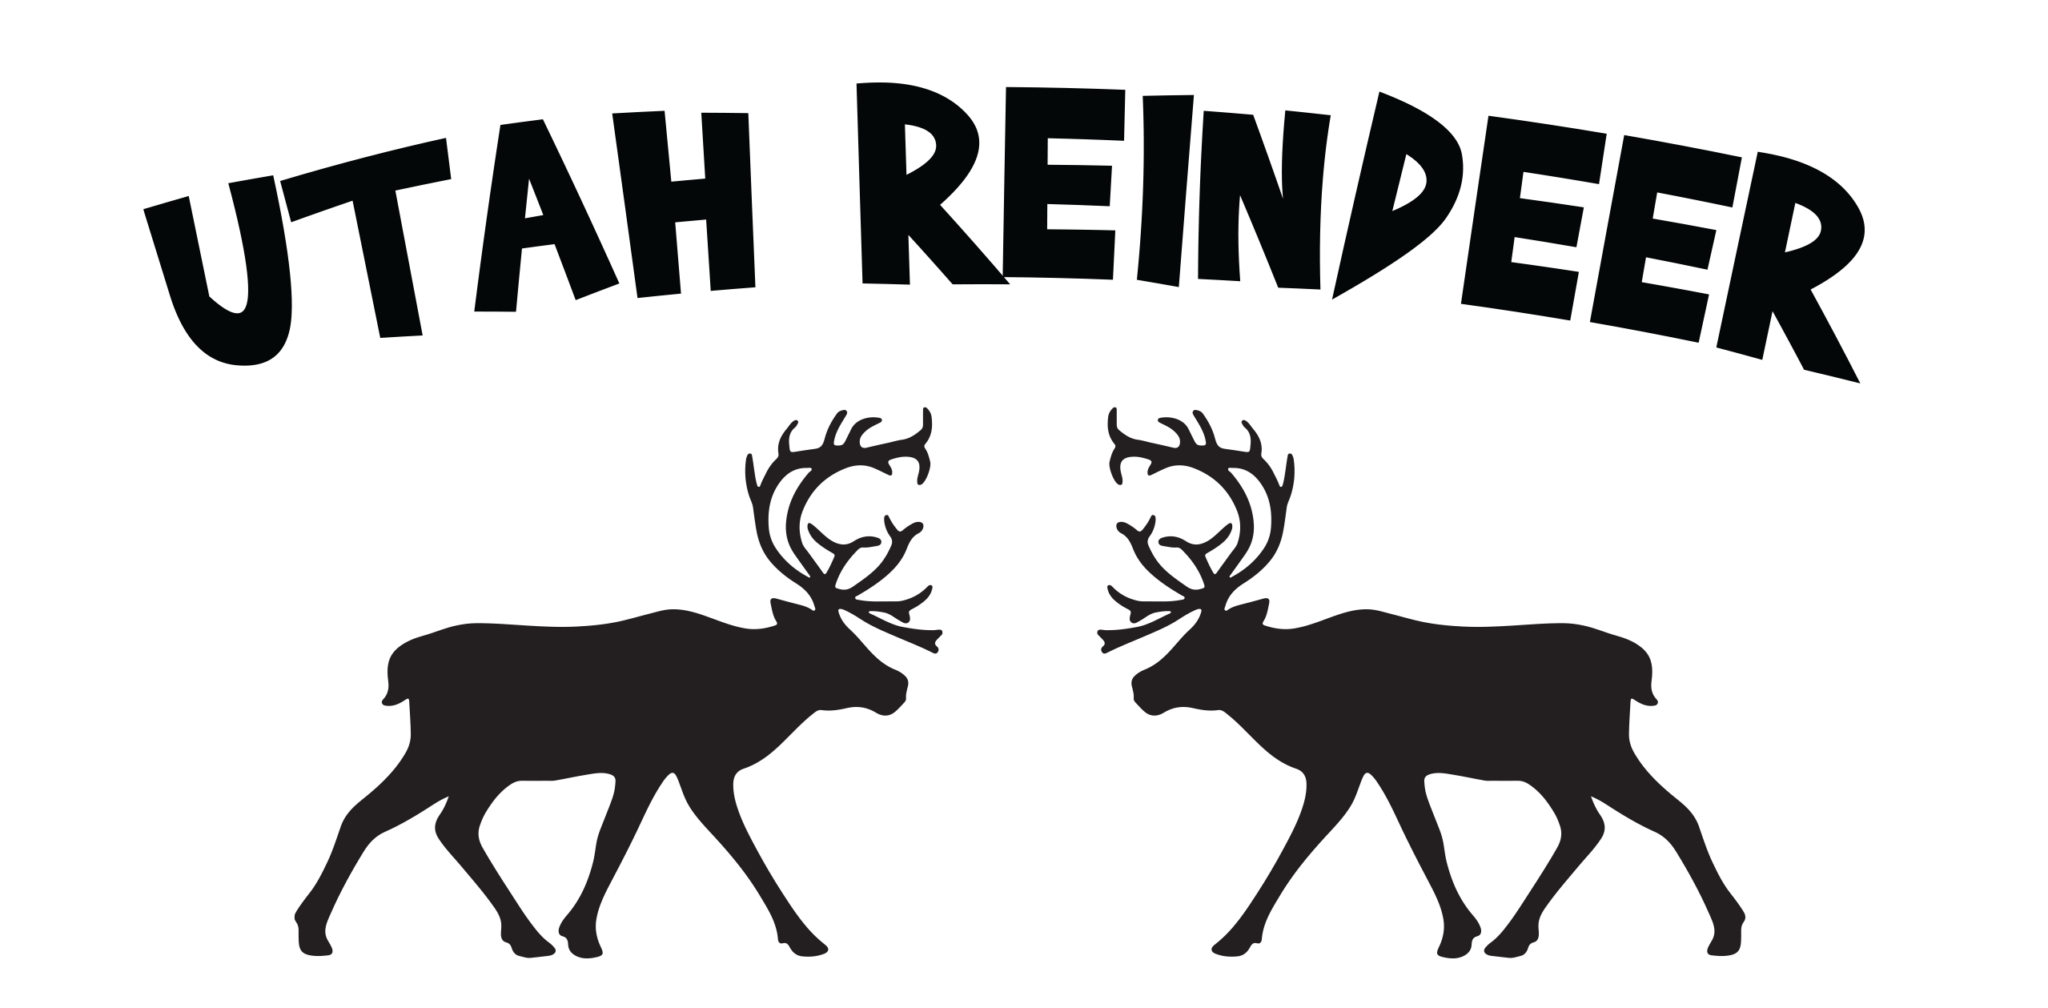 Utah Reindeer - Logo